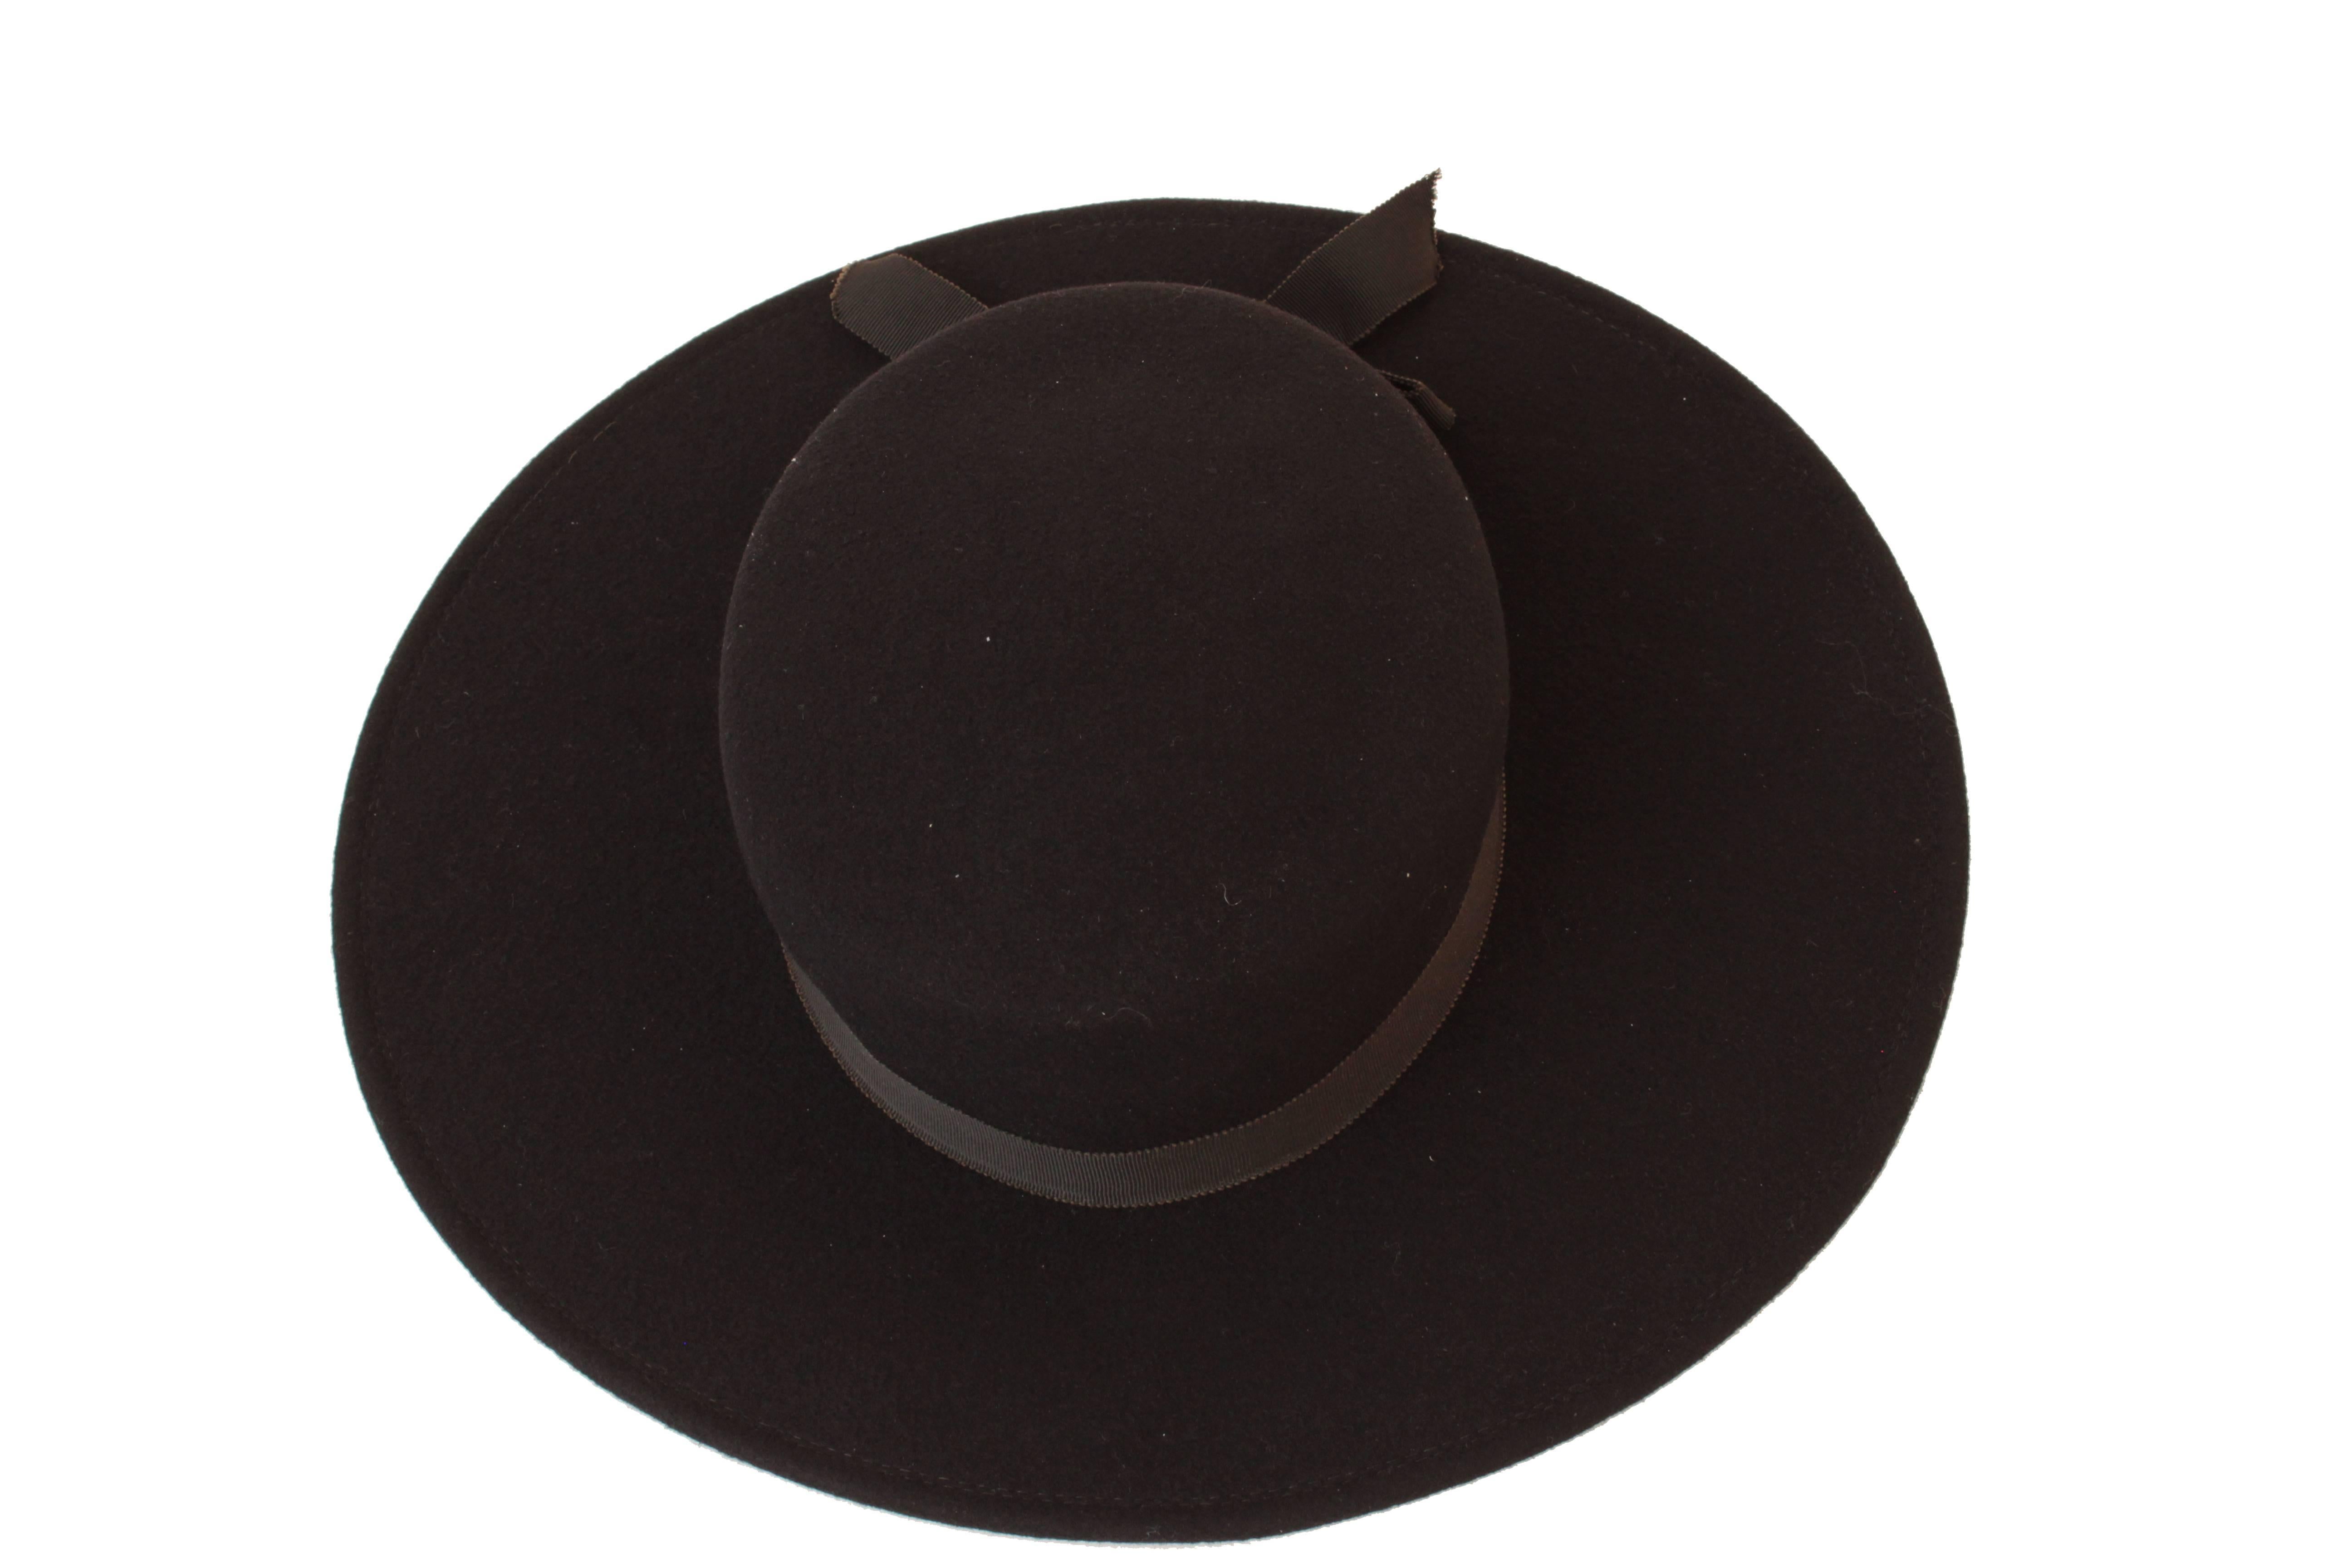 70s Yves Saint Laurent Wide Brim Hat Black Wool by Bollman Hat Co Sz S 2